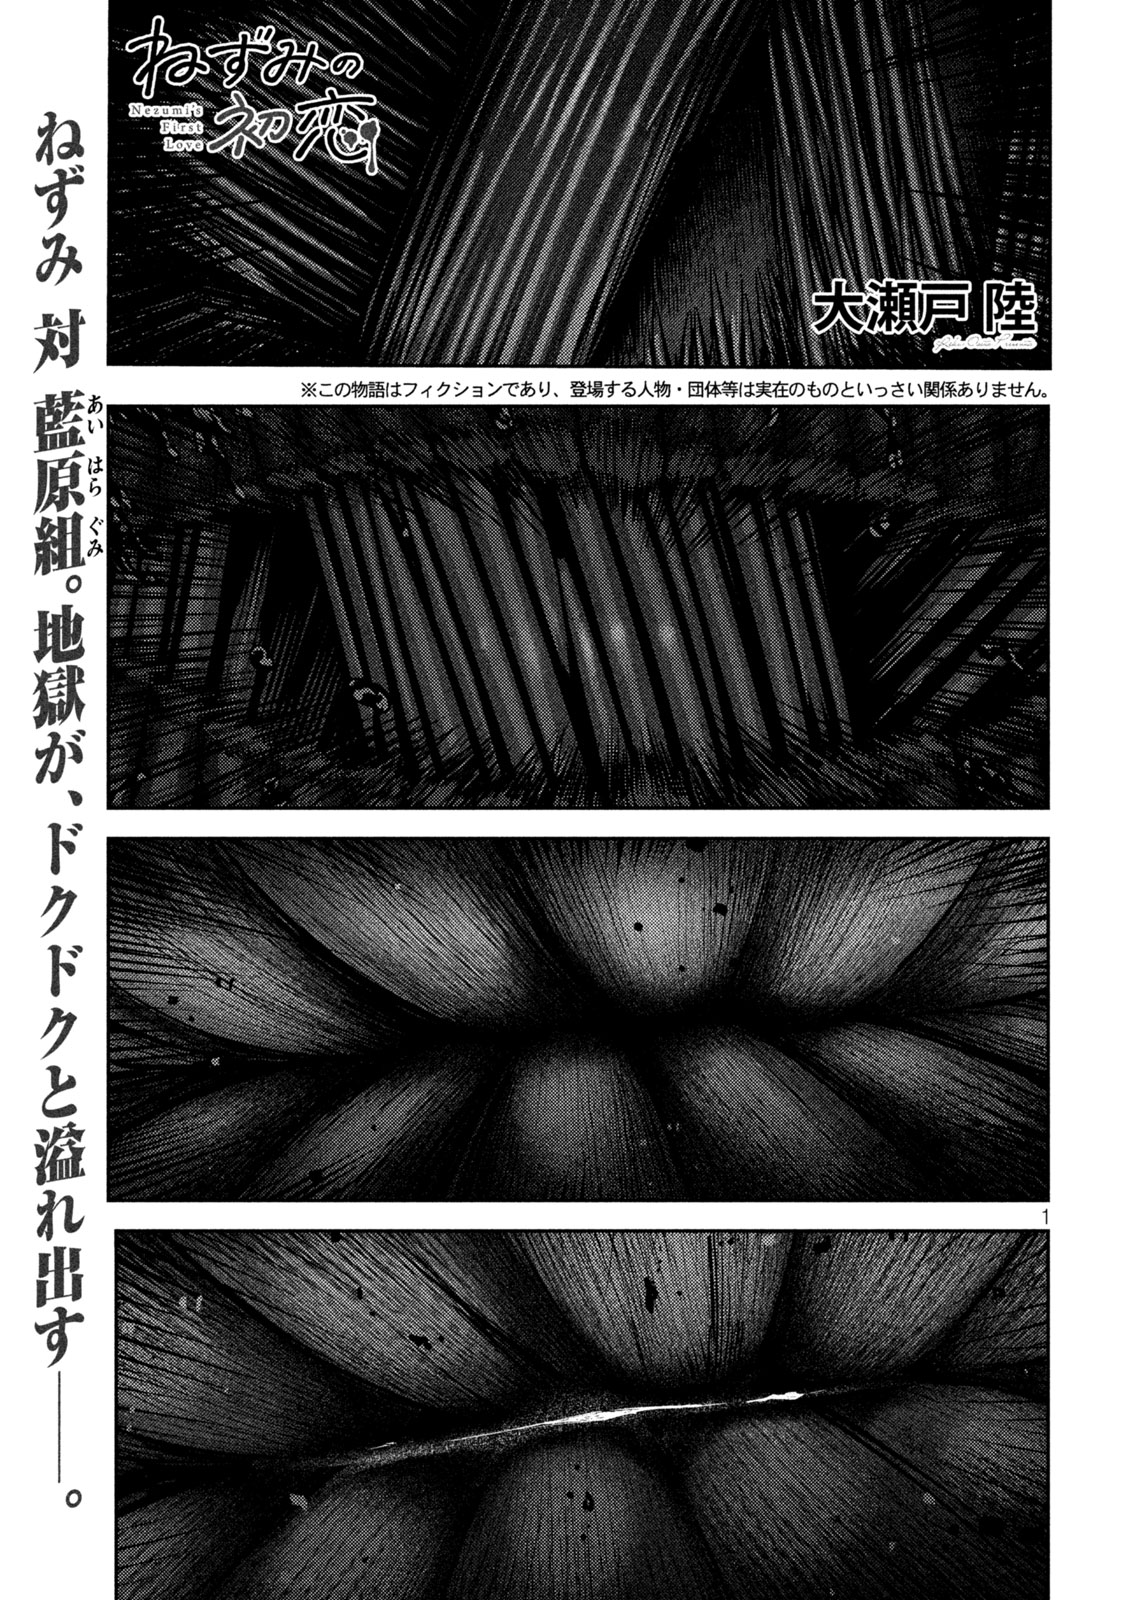 Nezumi no Koi - Chapter 20 - Page 1